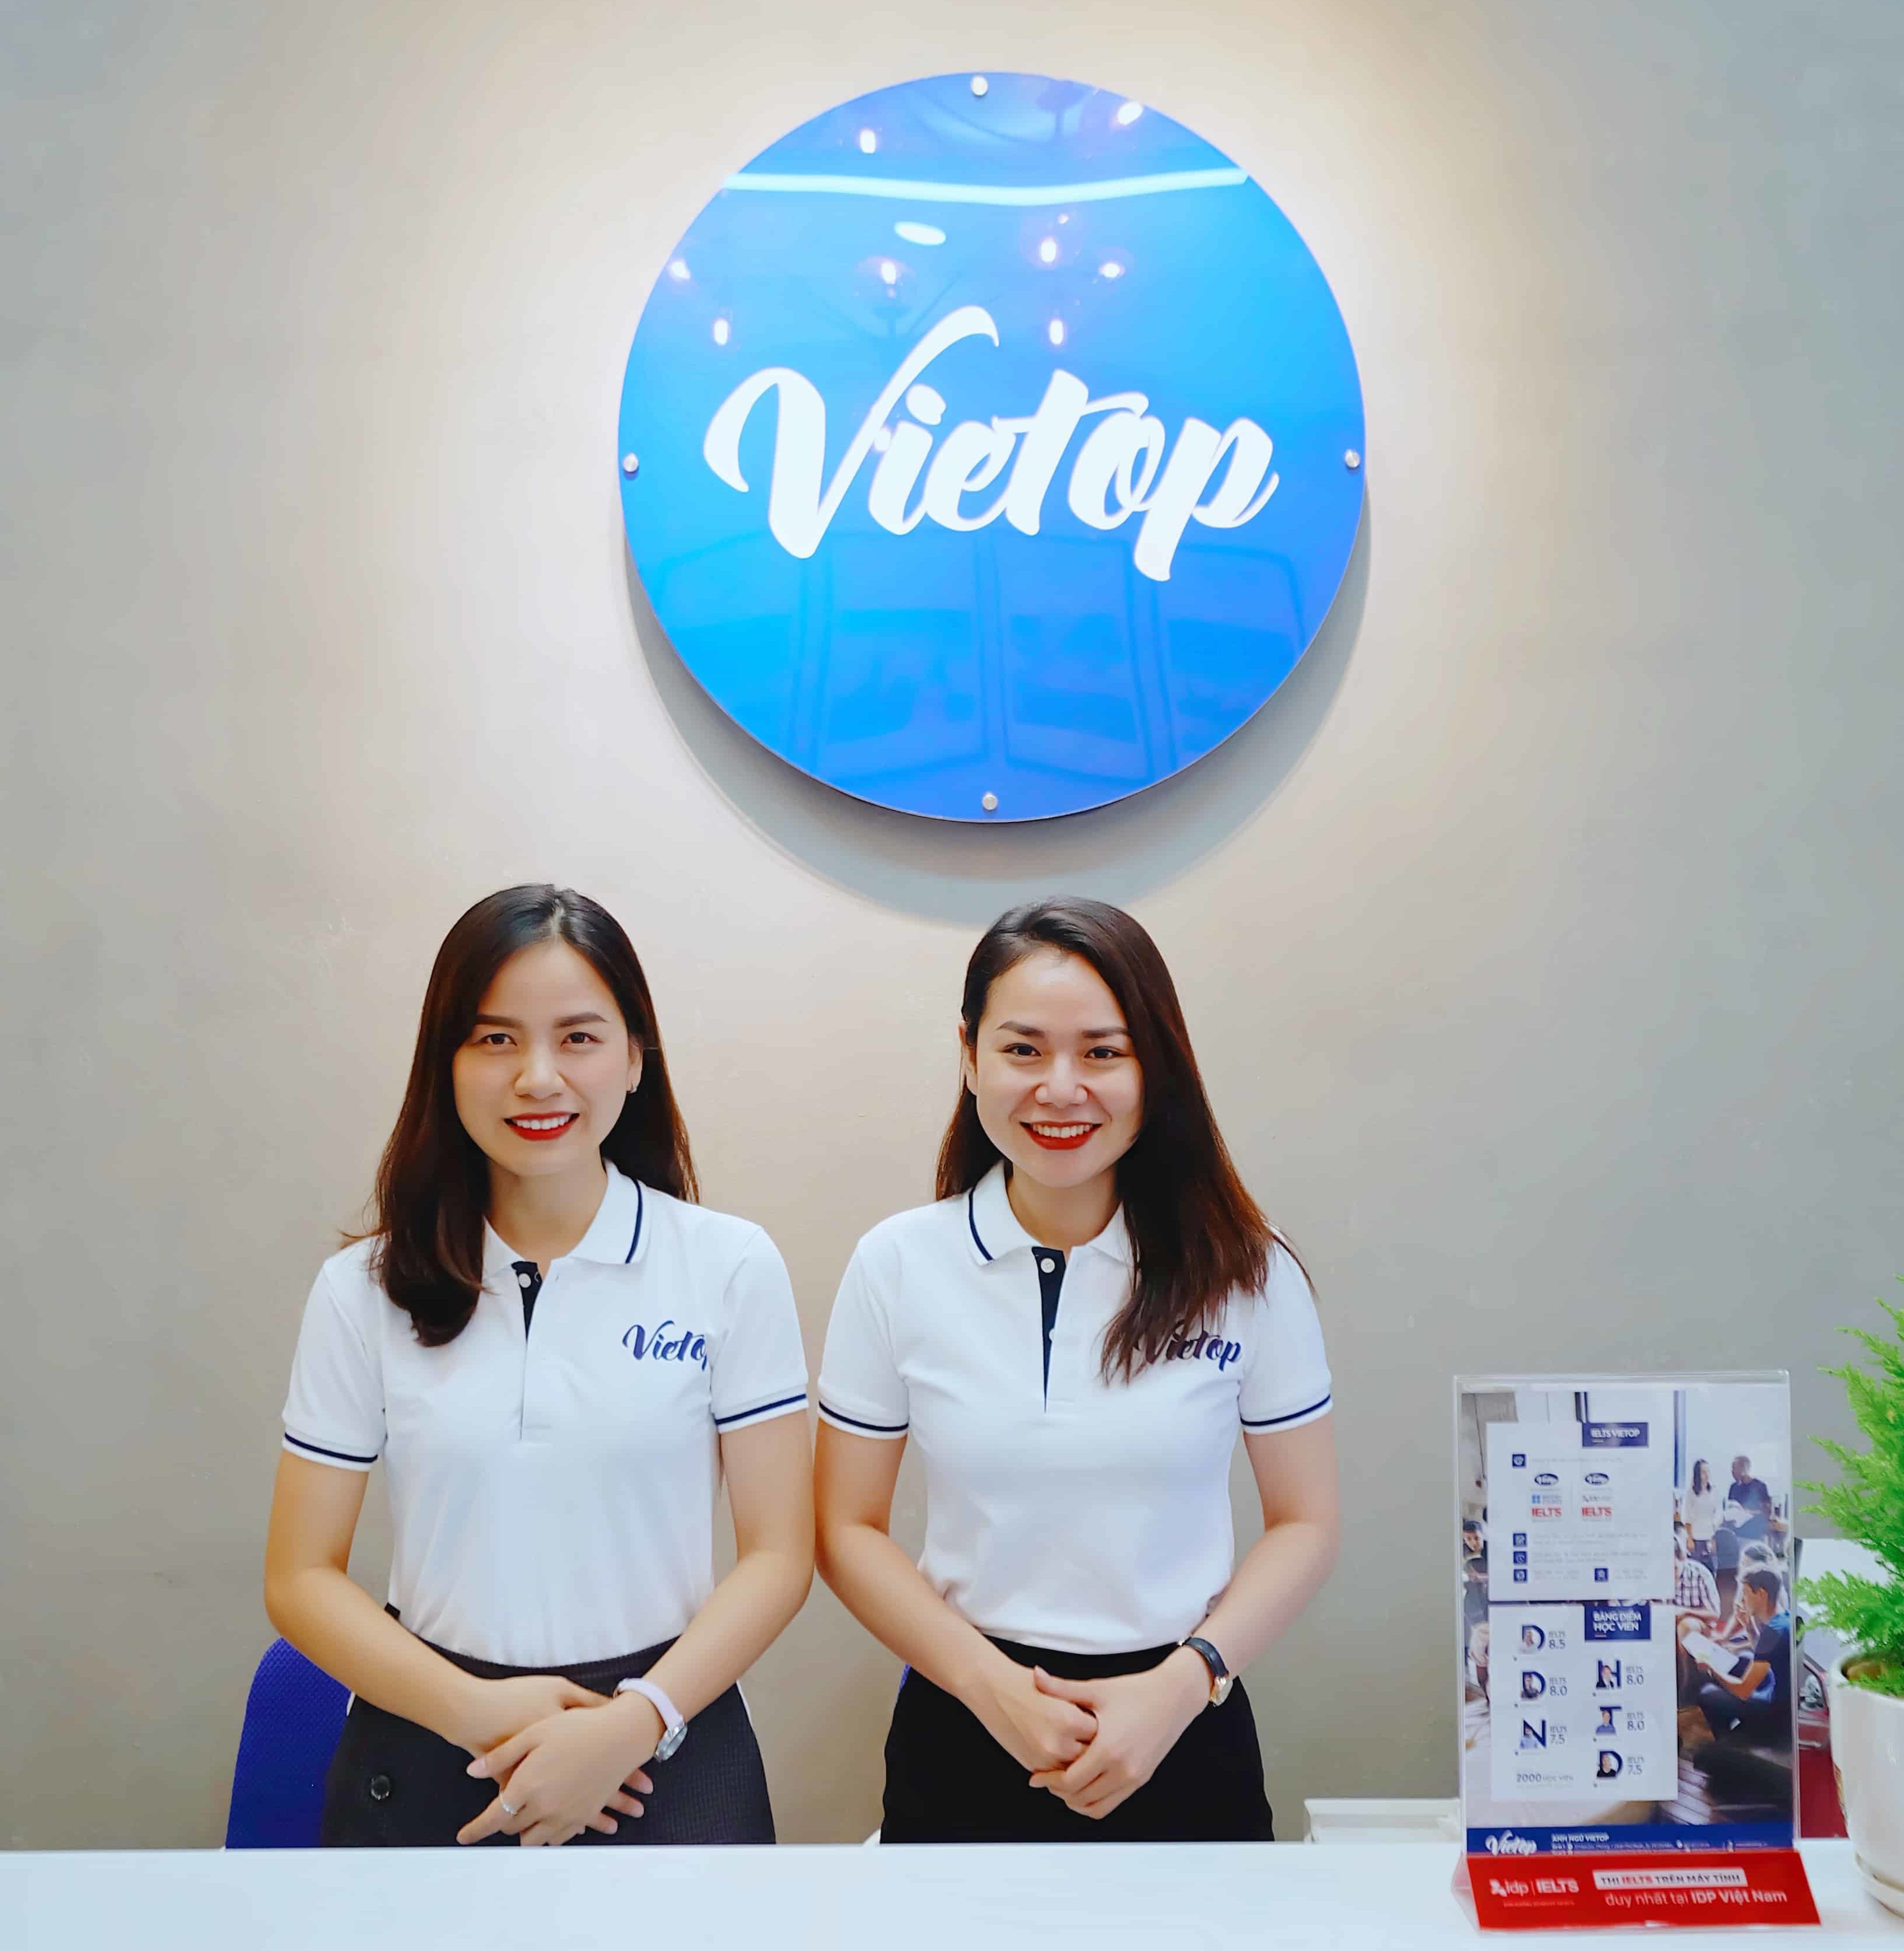 Review Trung tâm luyện thi IELTS Vietop ở Quận Phú Nhuận TPHCM -tuhocielts.vn